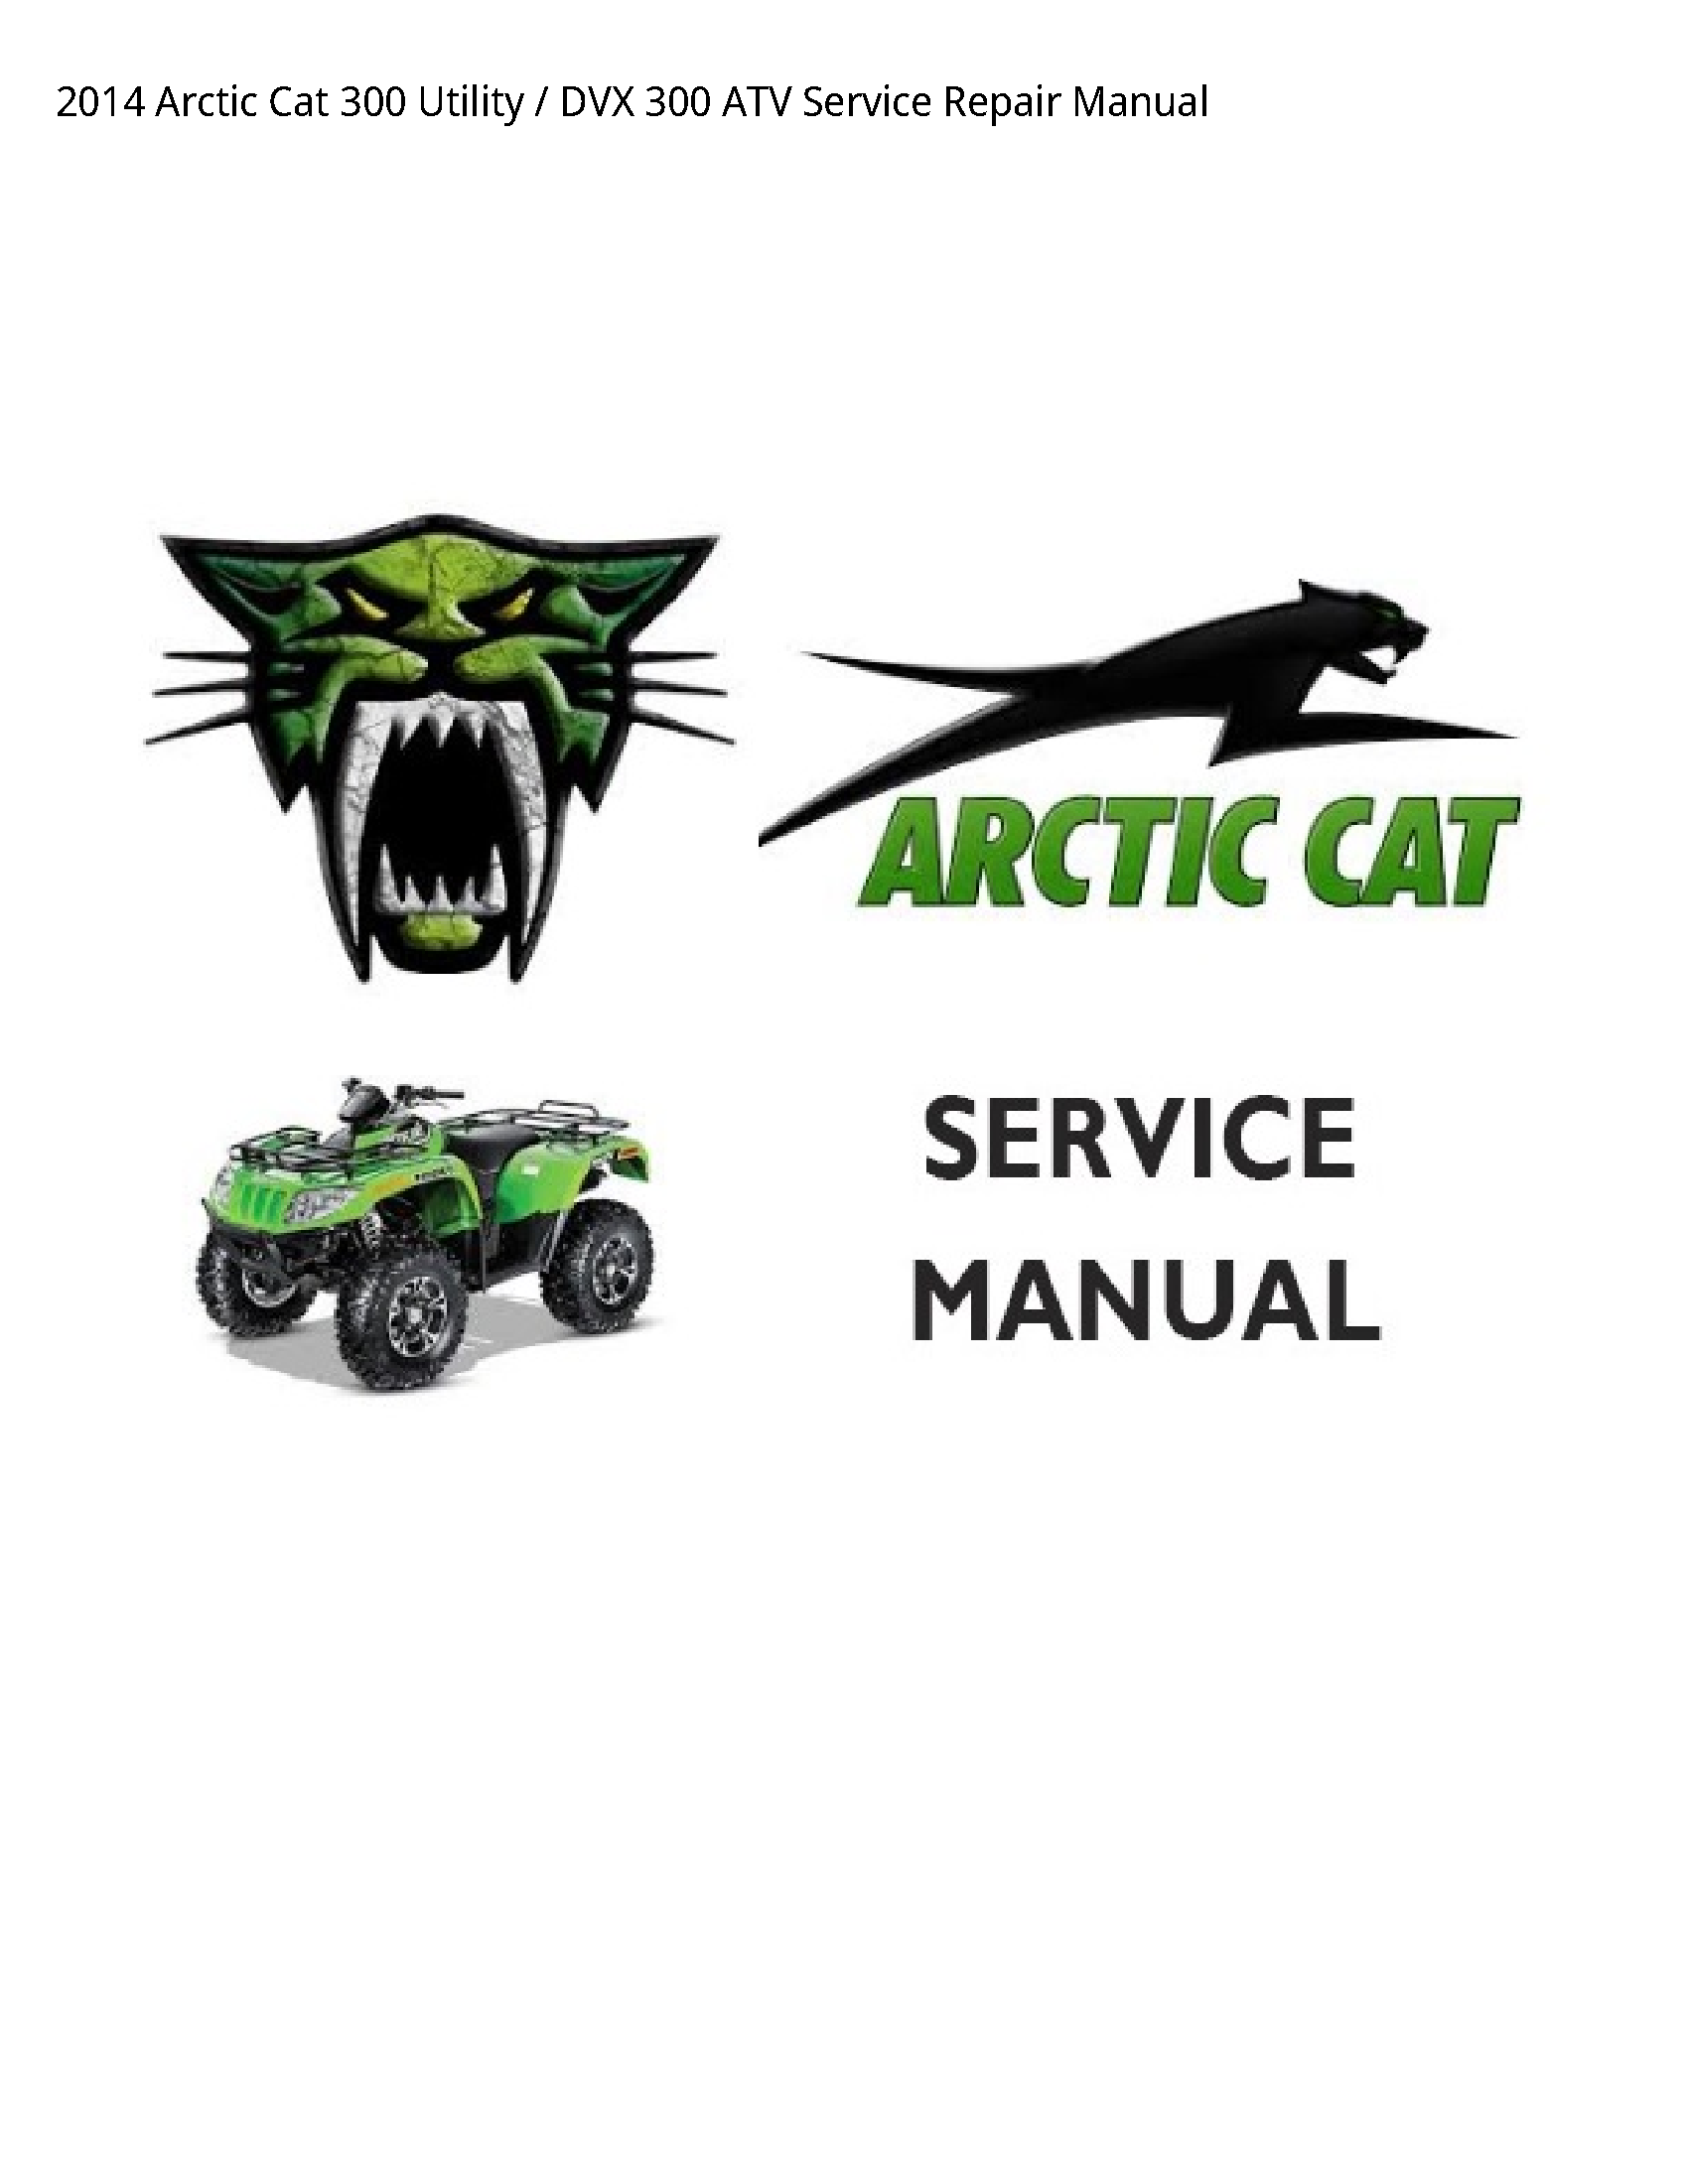 Arctic Cat 300 Utility DVX ATV manual